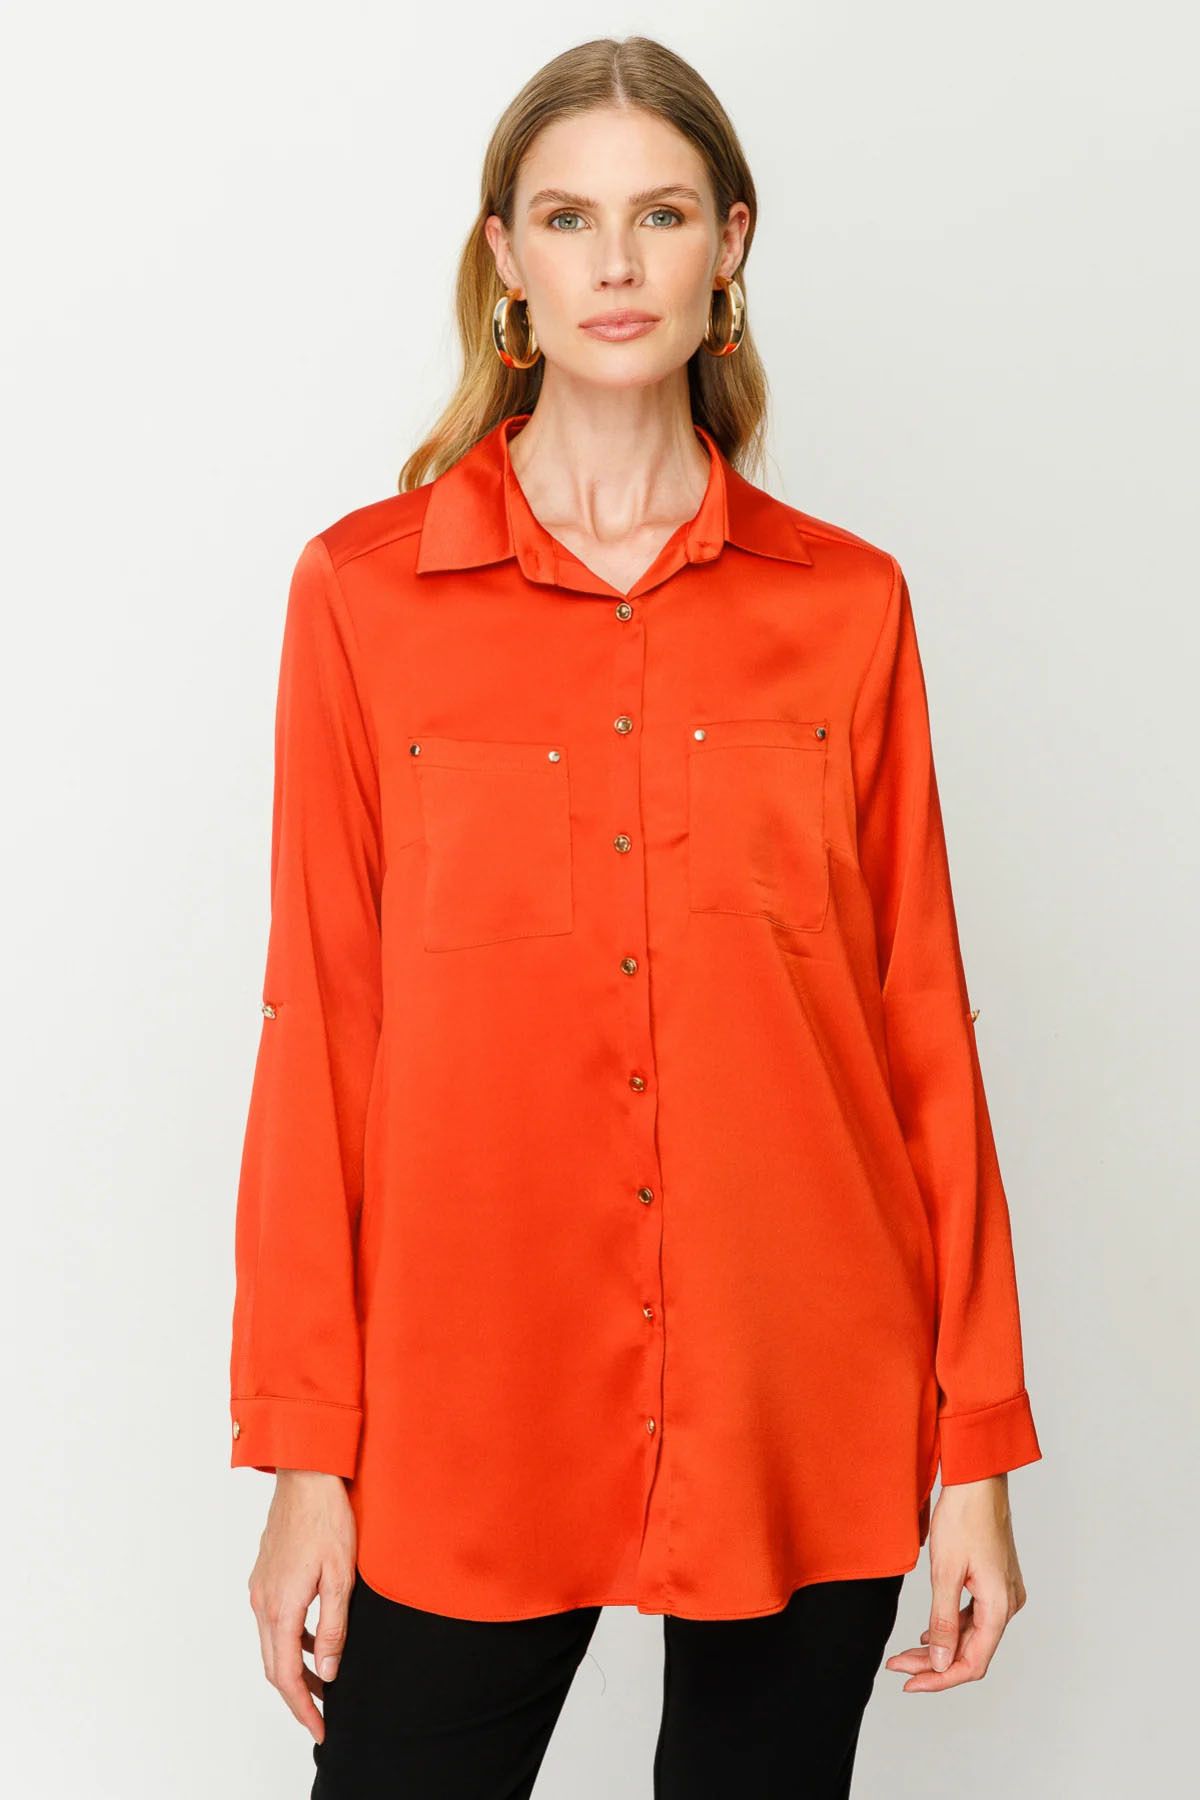 Ekol Kadın Dokulu Saten Gömlek 1013 Oranj